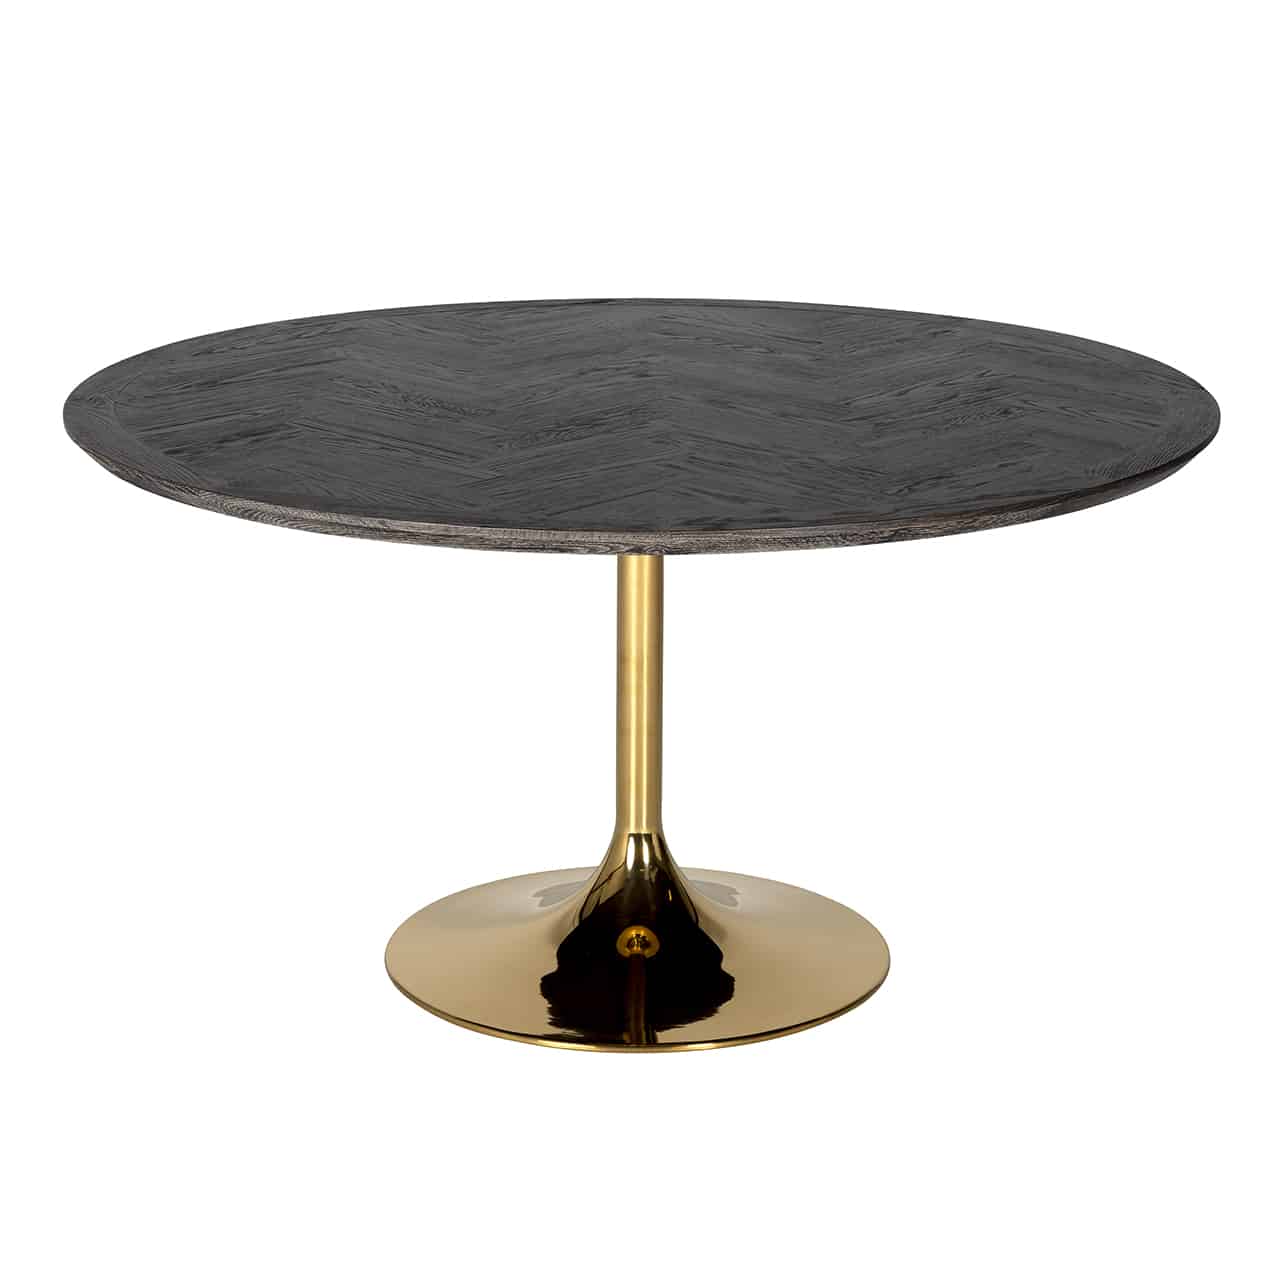 Esstisch, bestehend aus einem glänzend goldenen, röhrenförmigen Fuß auf einem großen Bodenteller, darauf eine  runde Tischplatte aus braun-schwarzem Eichenholz.